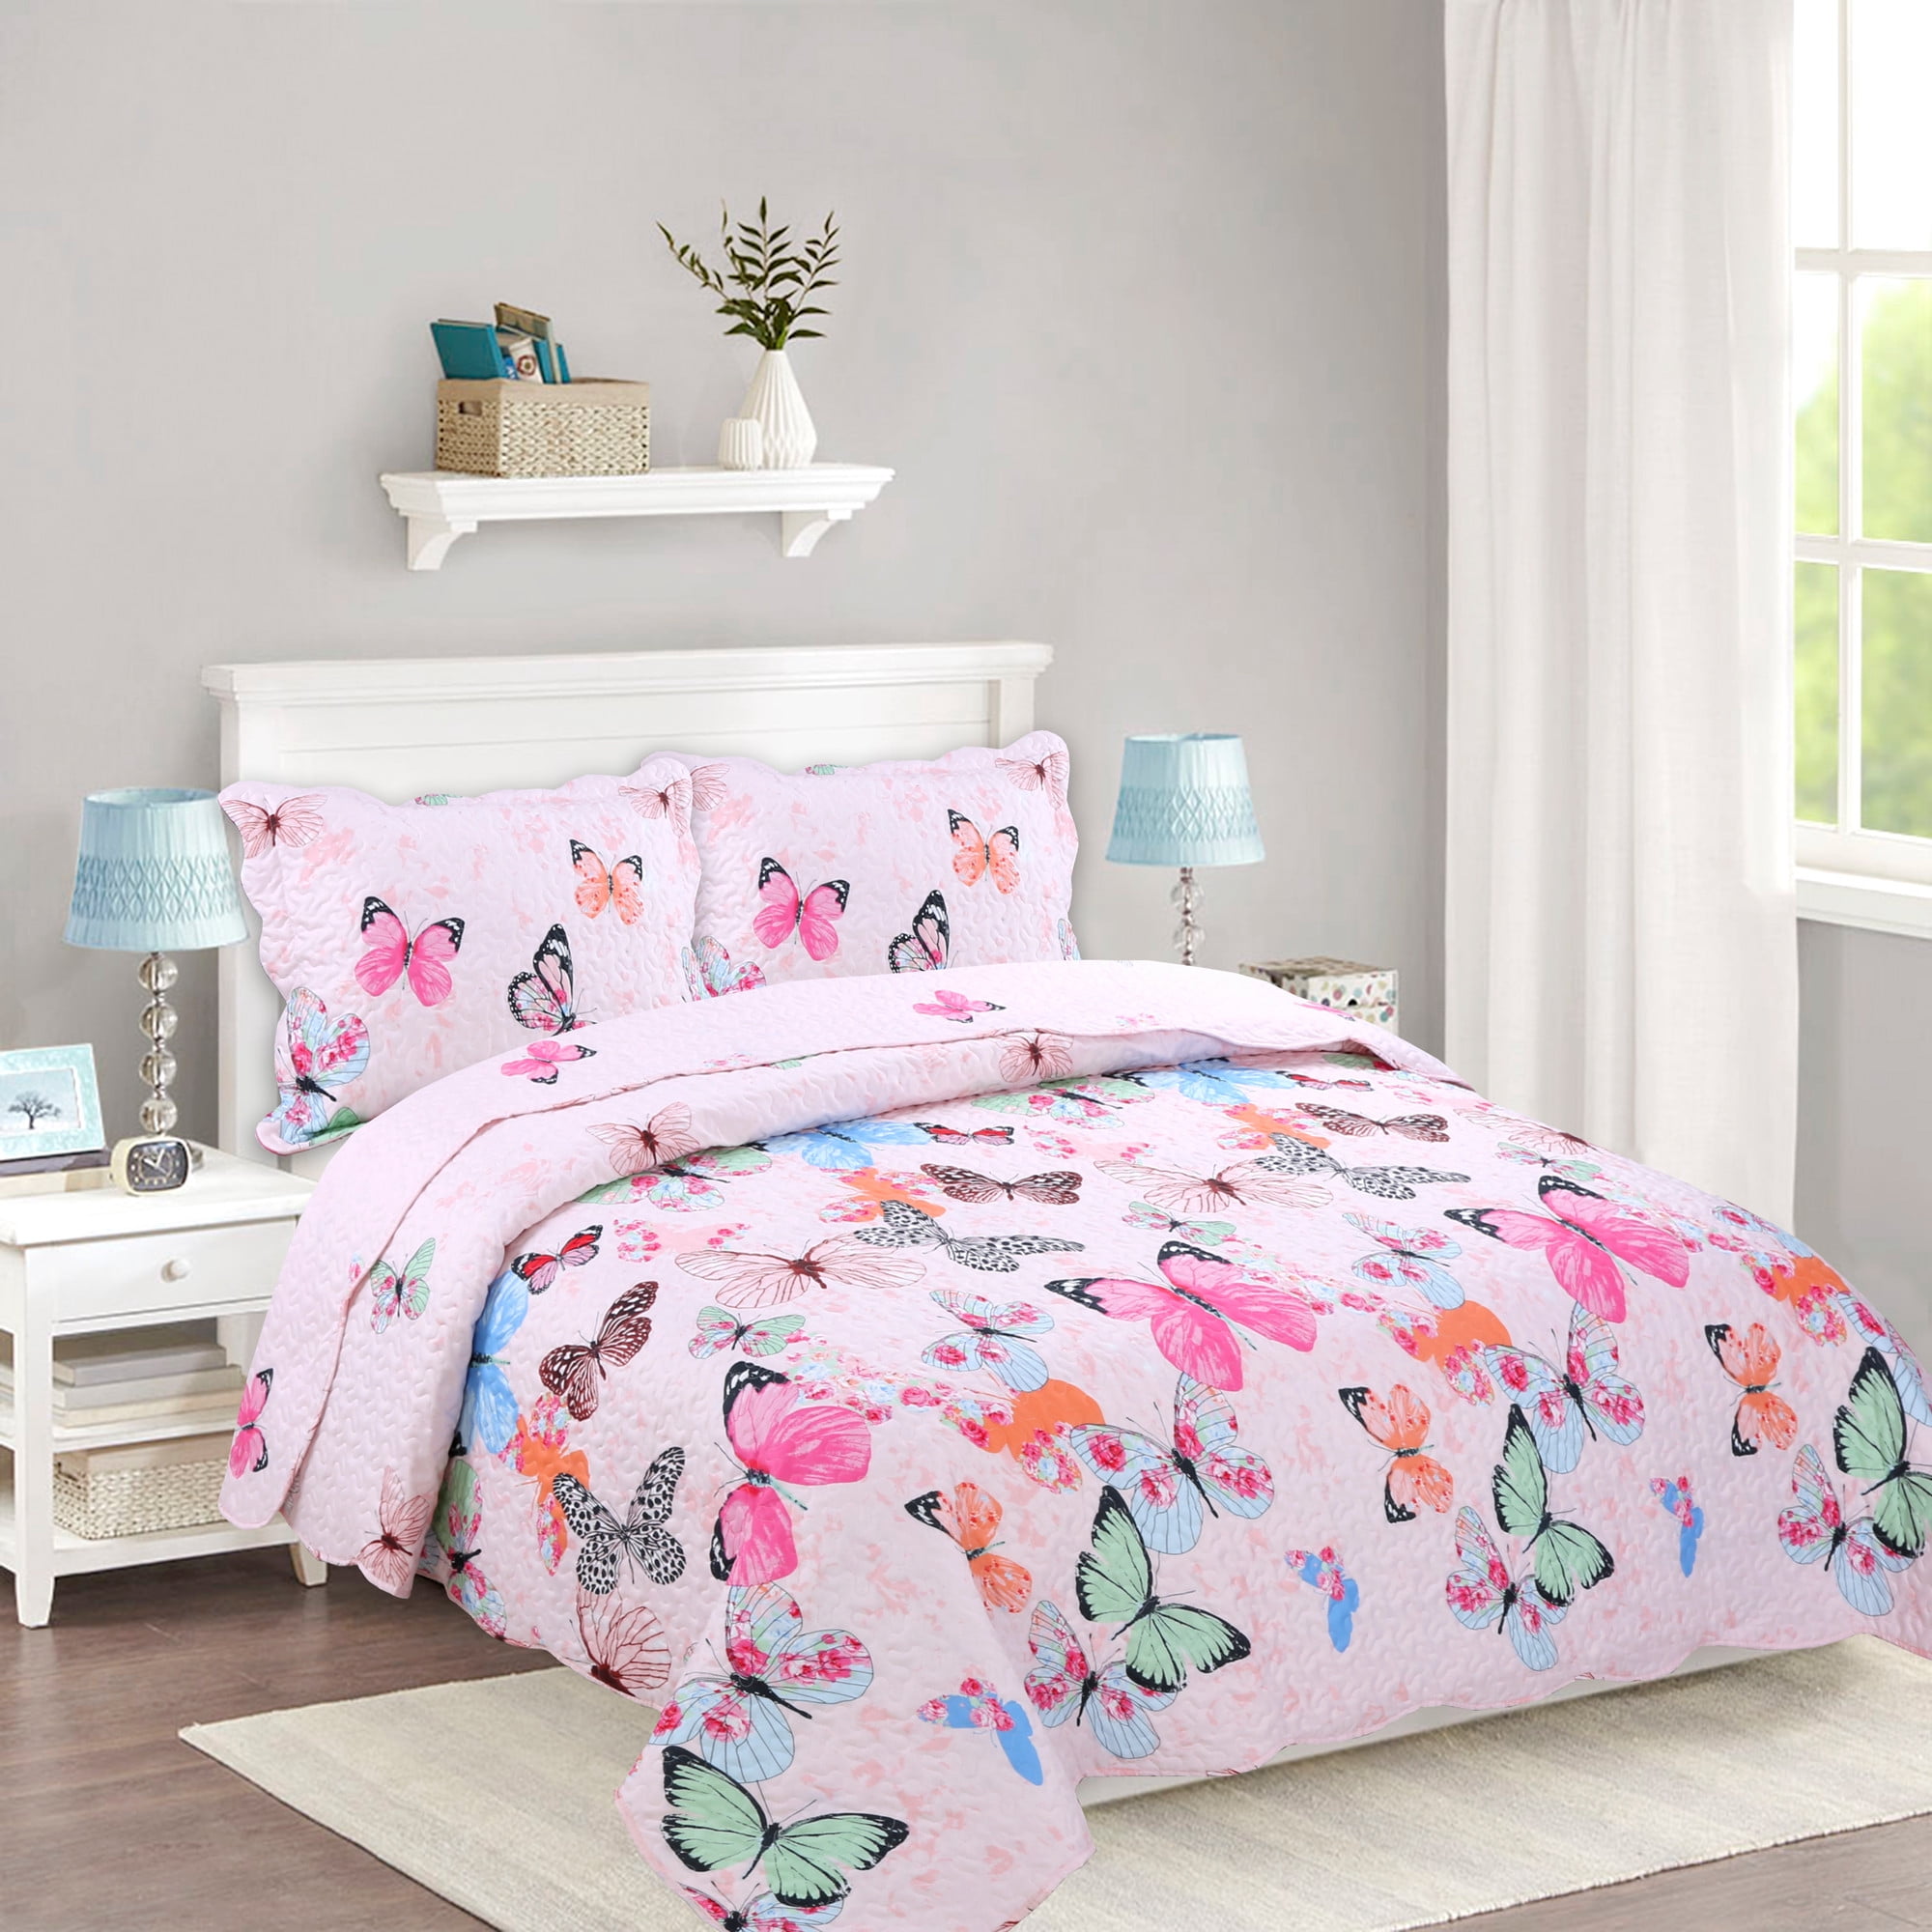 100% Cotton Kids Quilt Bedspread Comforter Set Throw Blanket for Girls Deer 